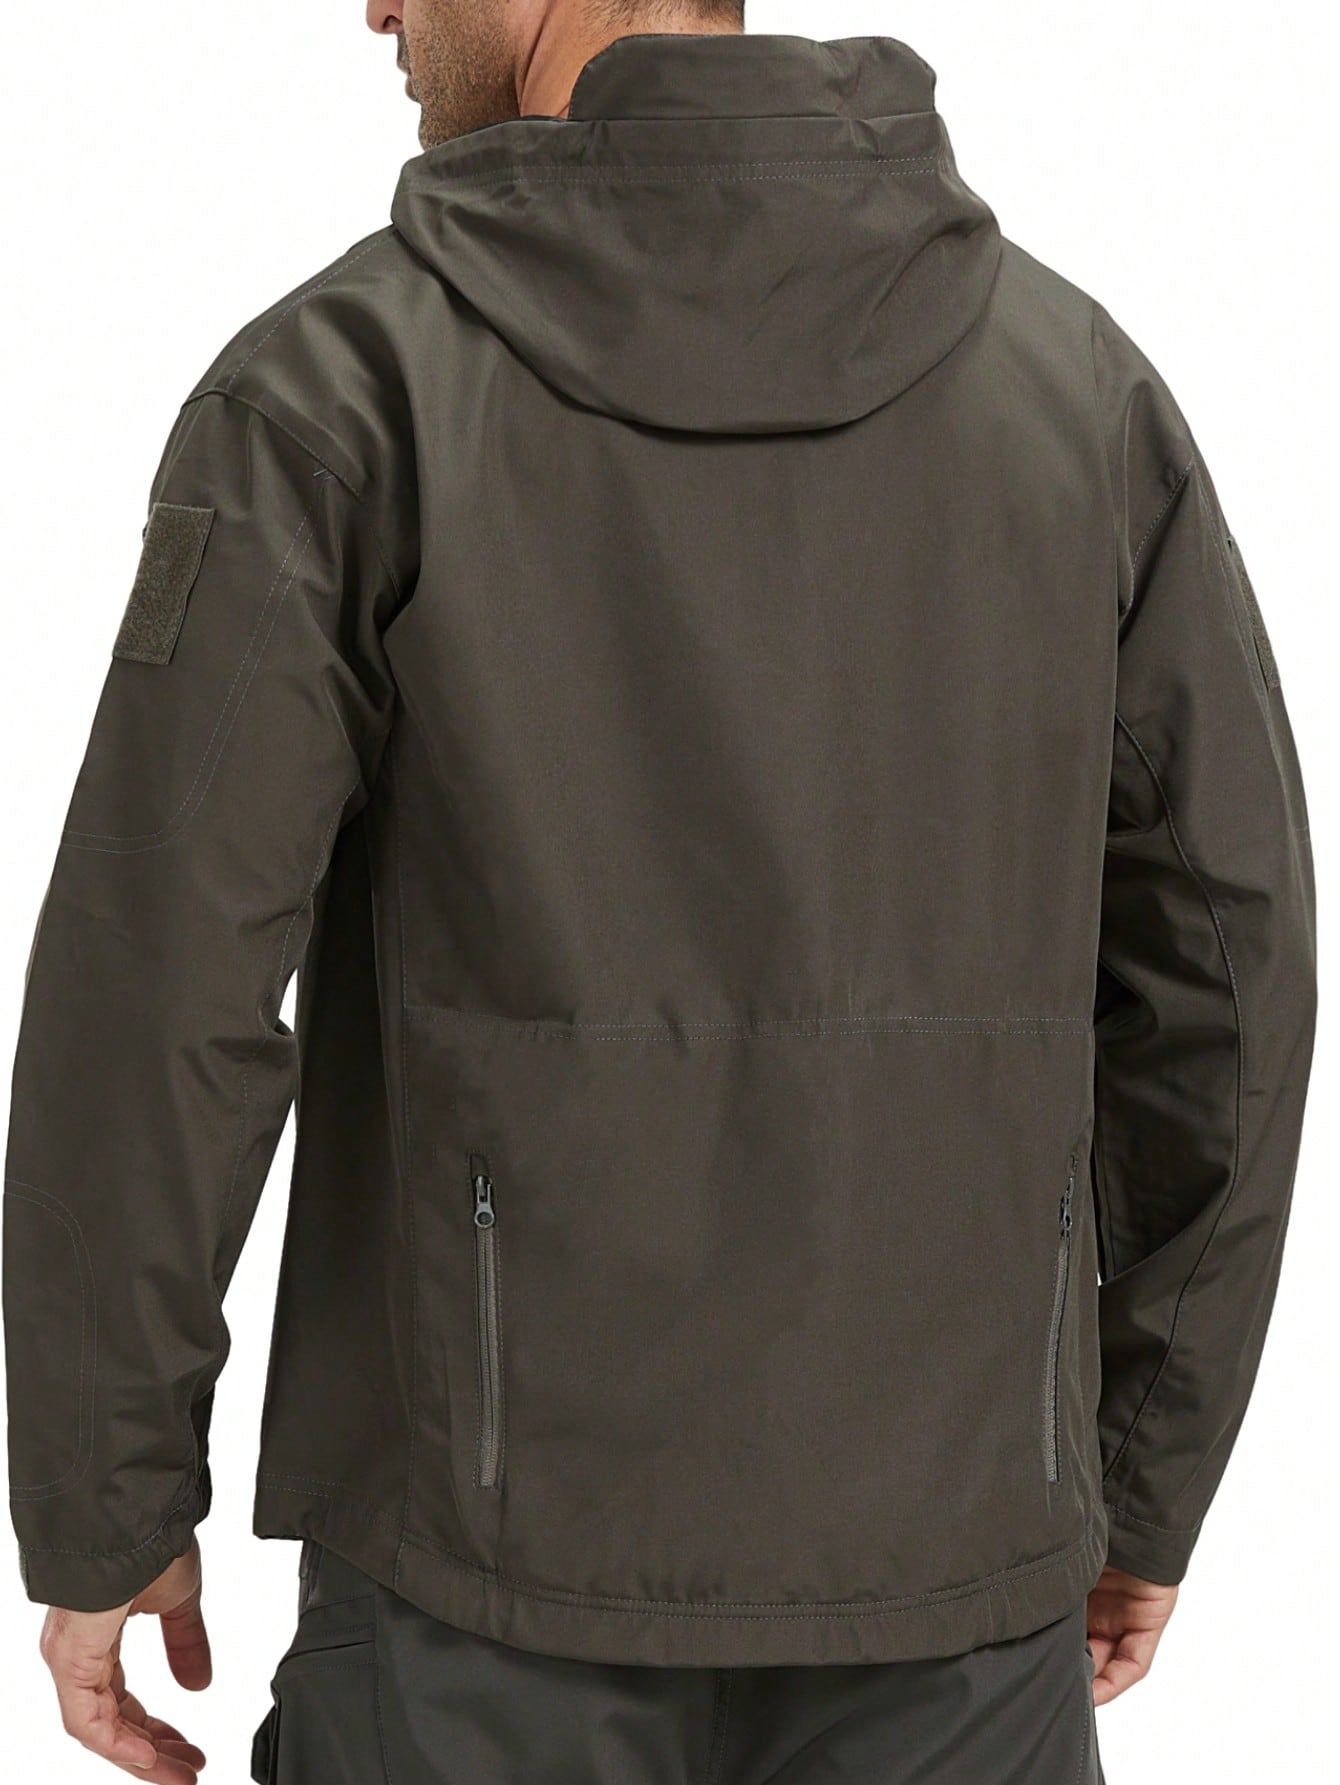 Мужская спортивная куртка с капюшоном, темно-серый профессиональная женская ветрозащитная водонепроницаемая лыжная куртка vector пальто зимняя теплая уличная спортивная одежда для снега ка